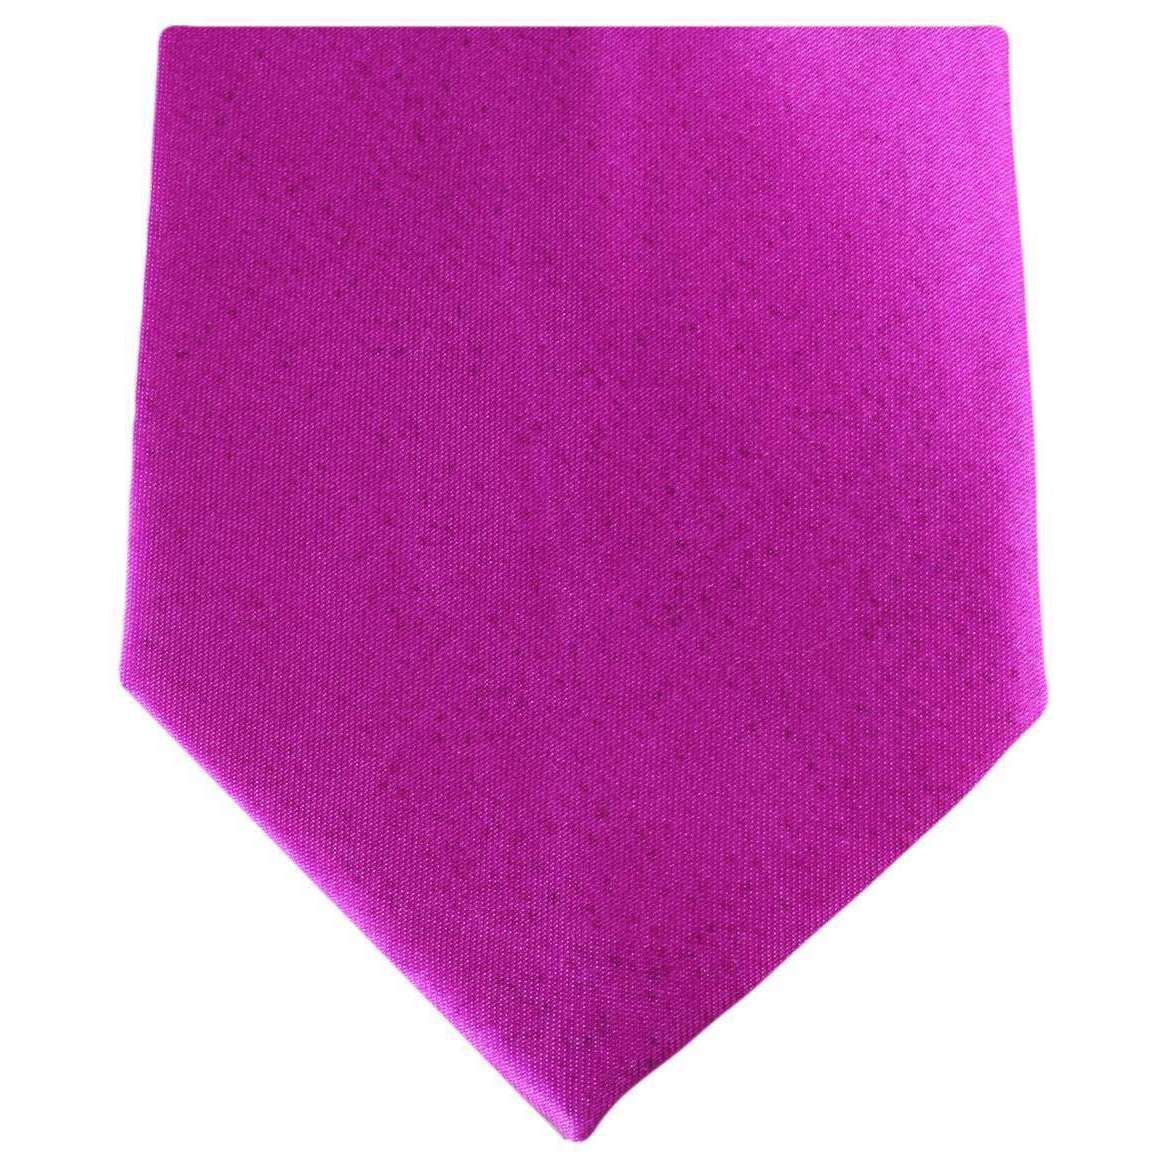 Knightsbridge Neckwear Regular Polyester Tie - Hot Pink